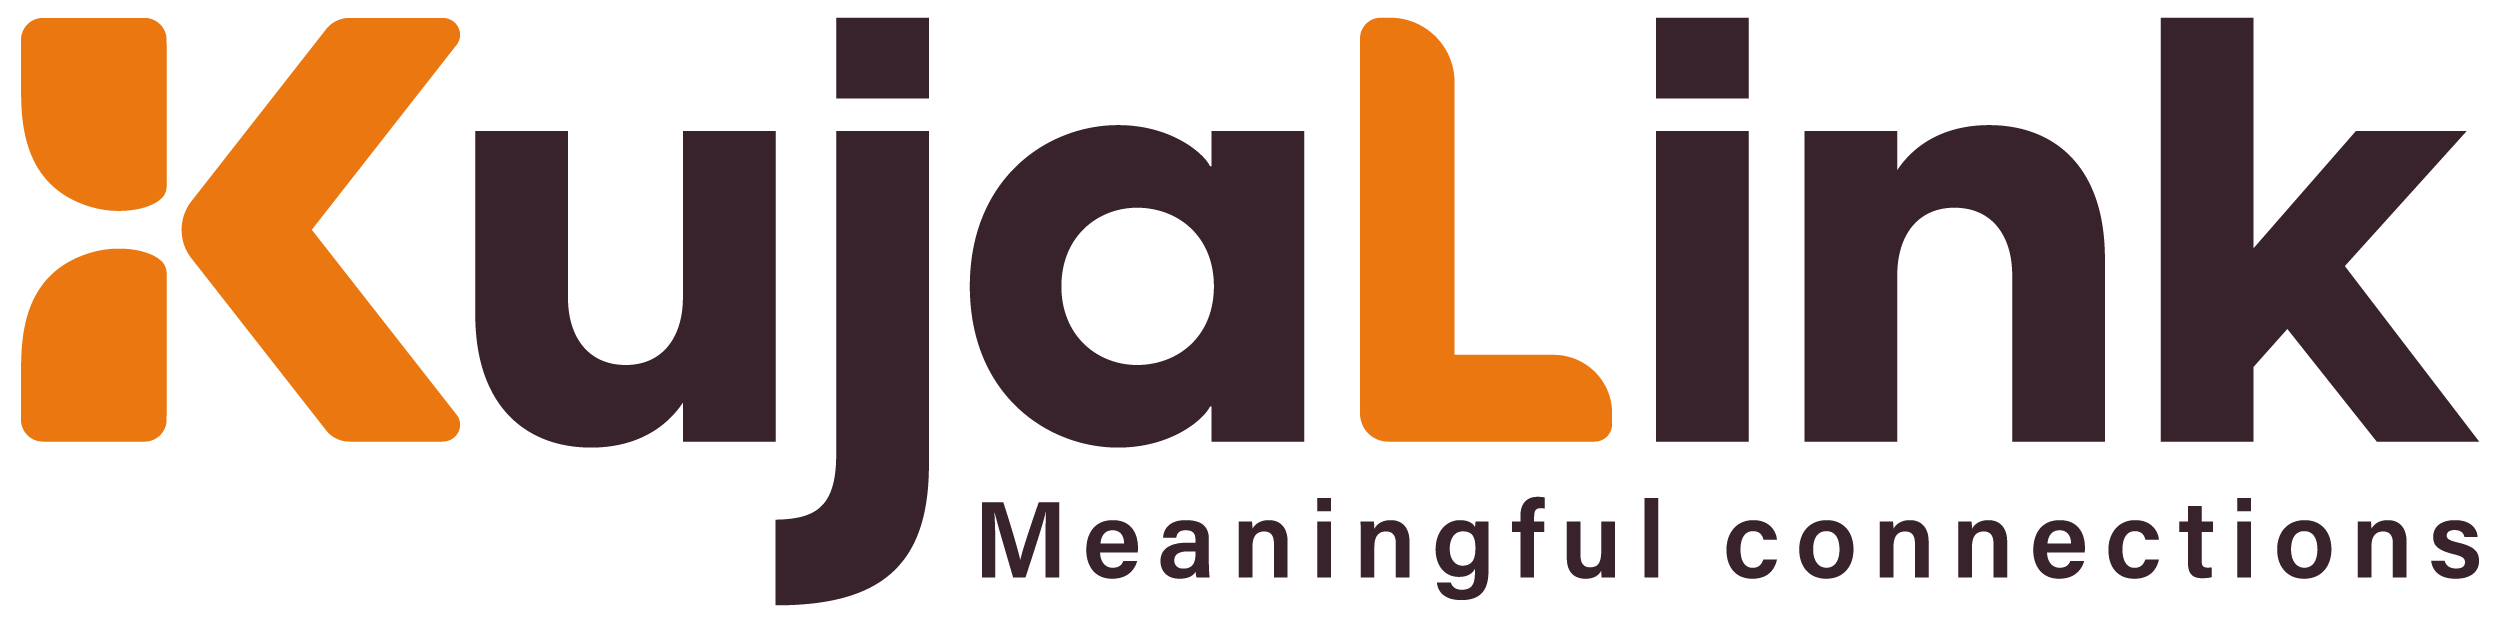 Kujalink Logo